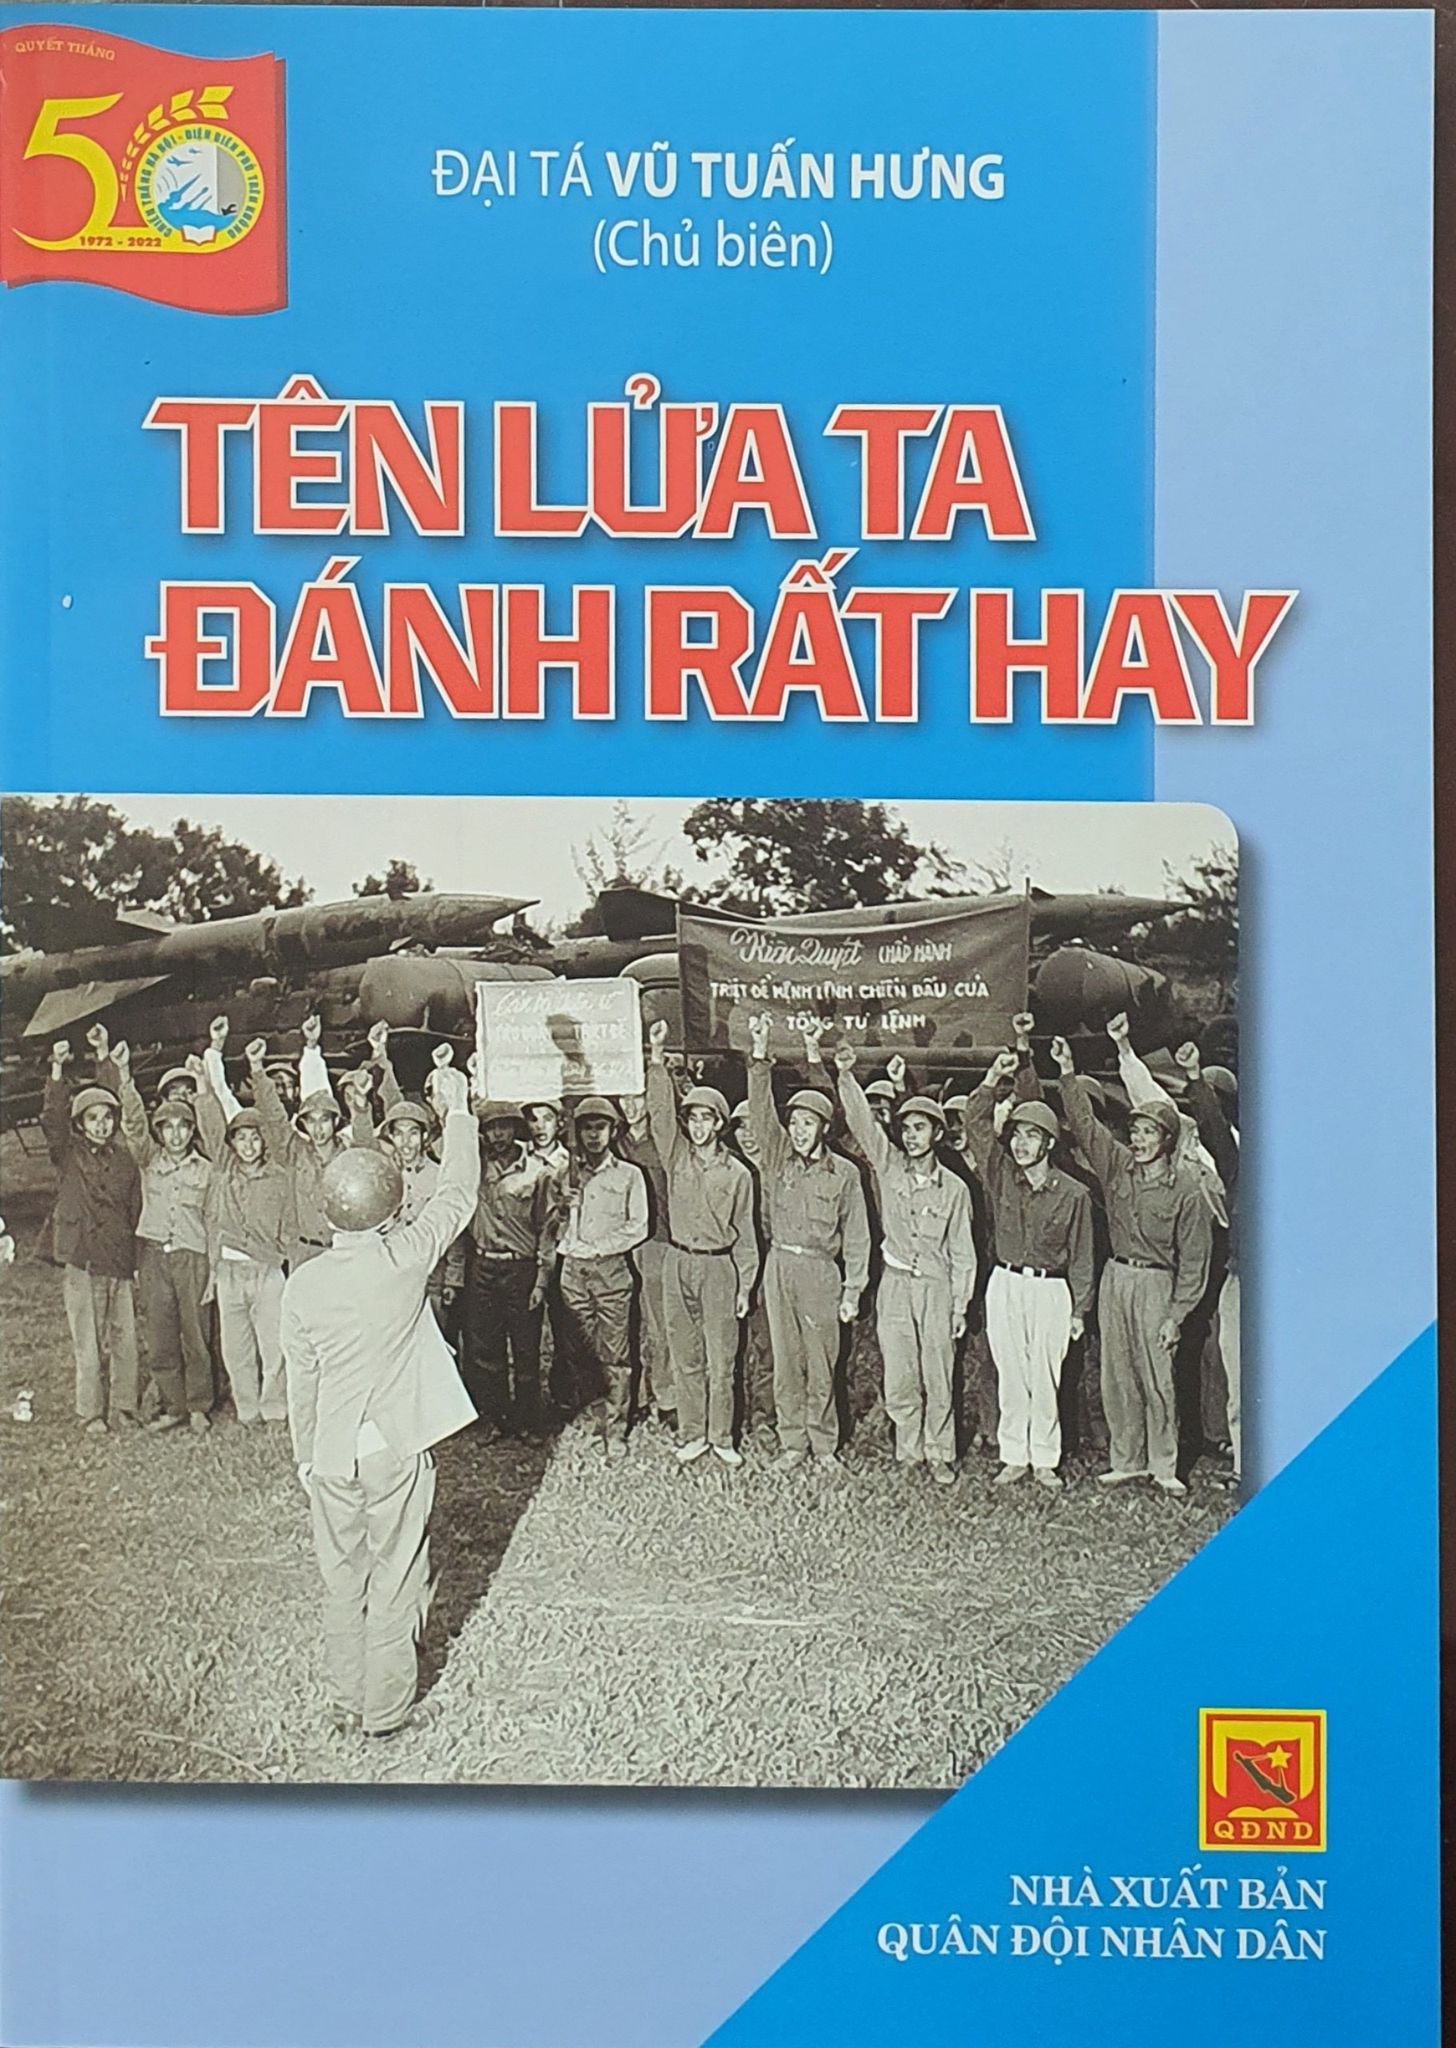 Ra mắt bộ sách kỷ niệm 50 năm Chiến thắng “Hà Nội - Điện Biên Phủ trên không” - Ảnh 6.